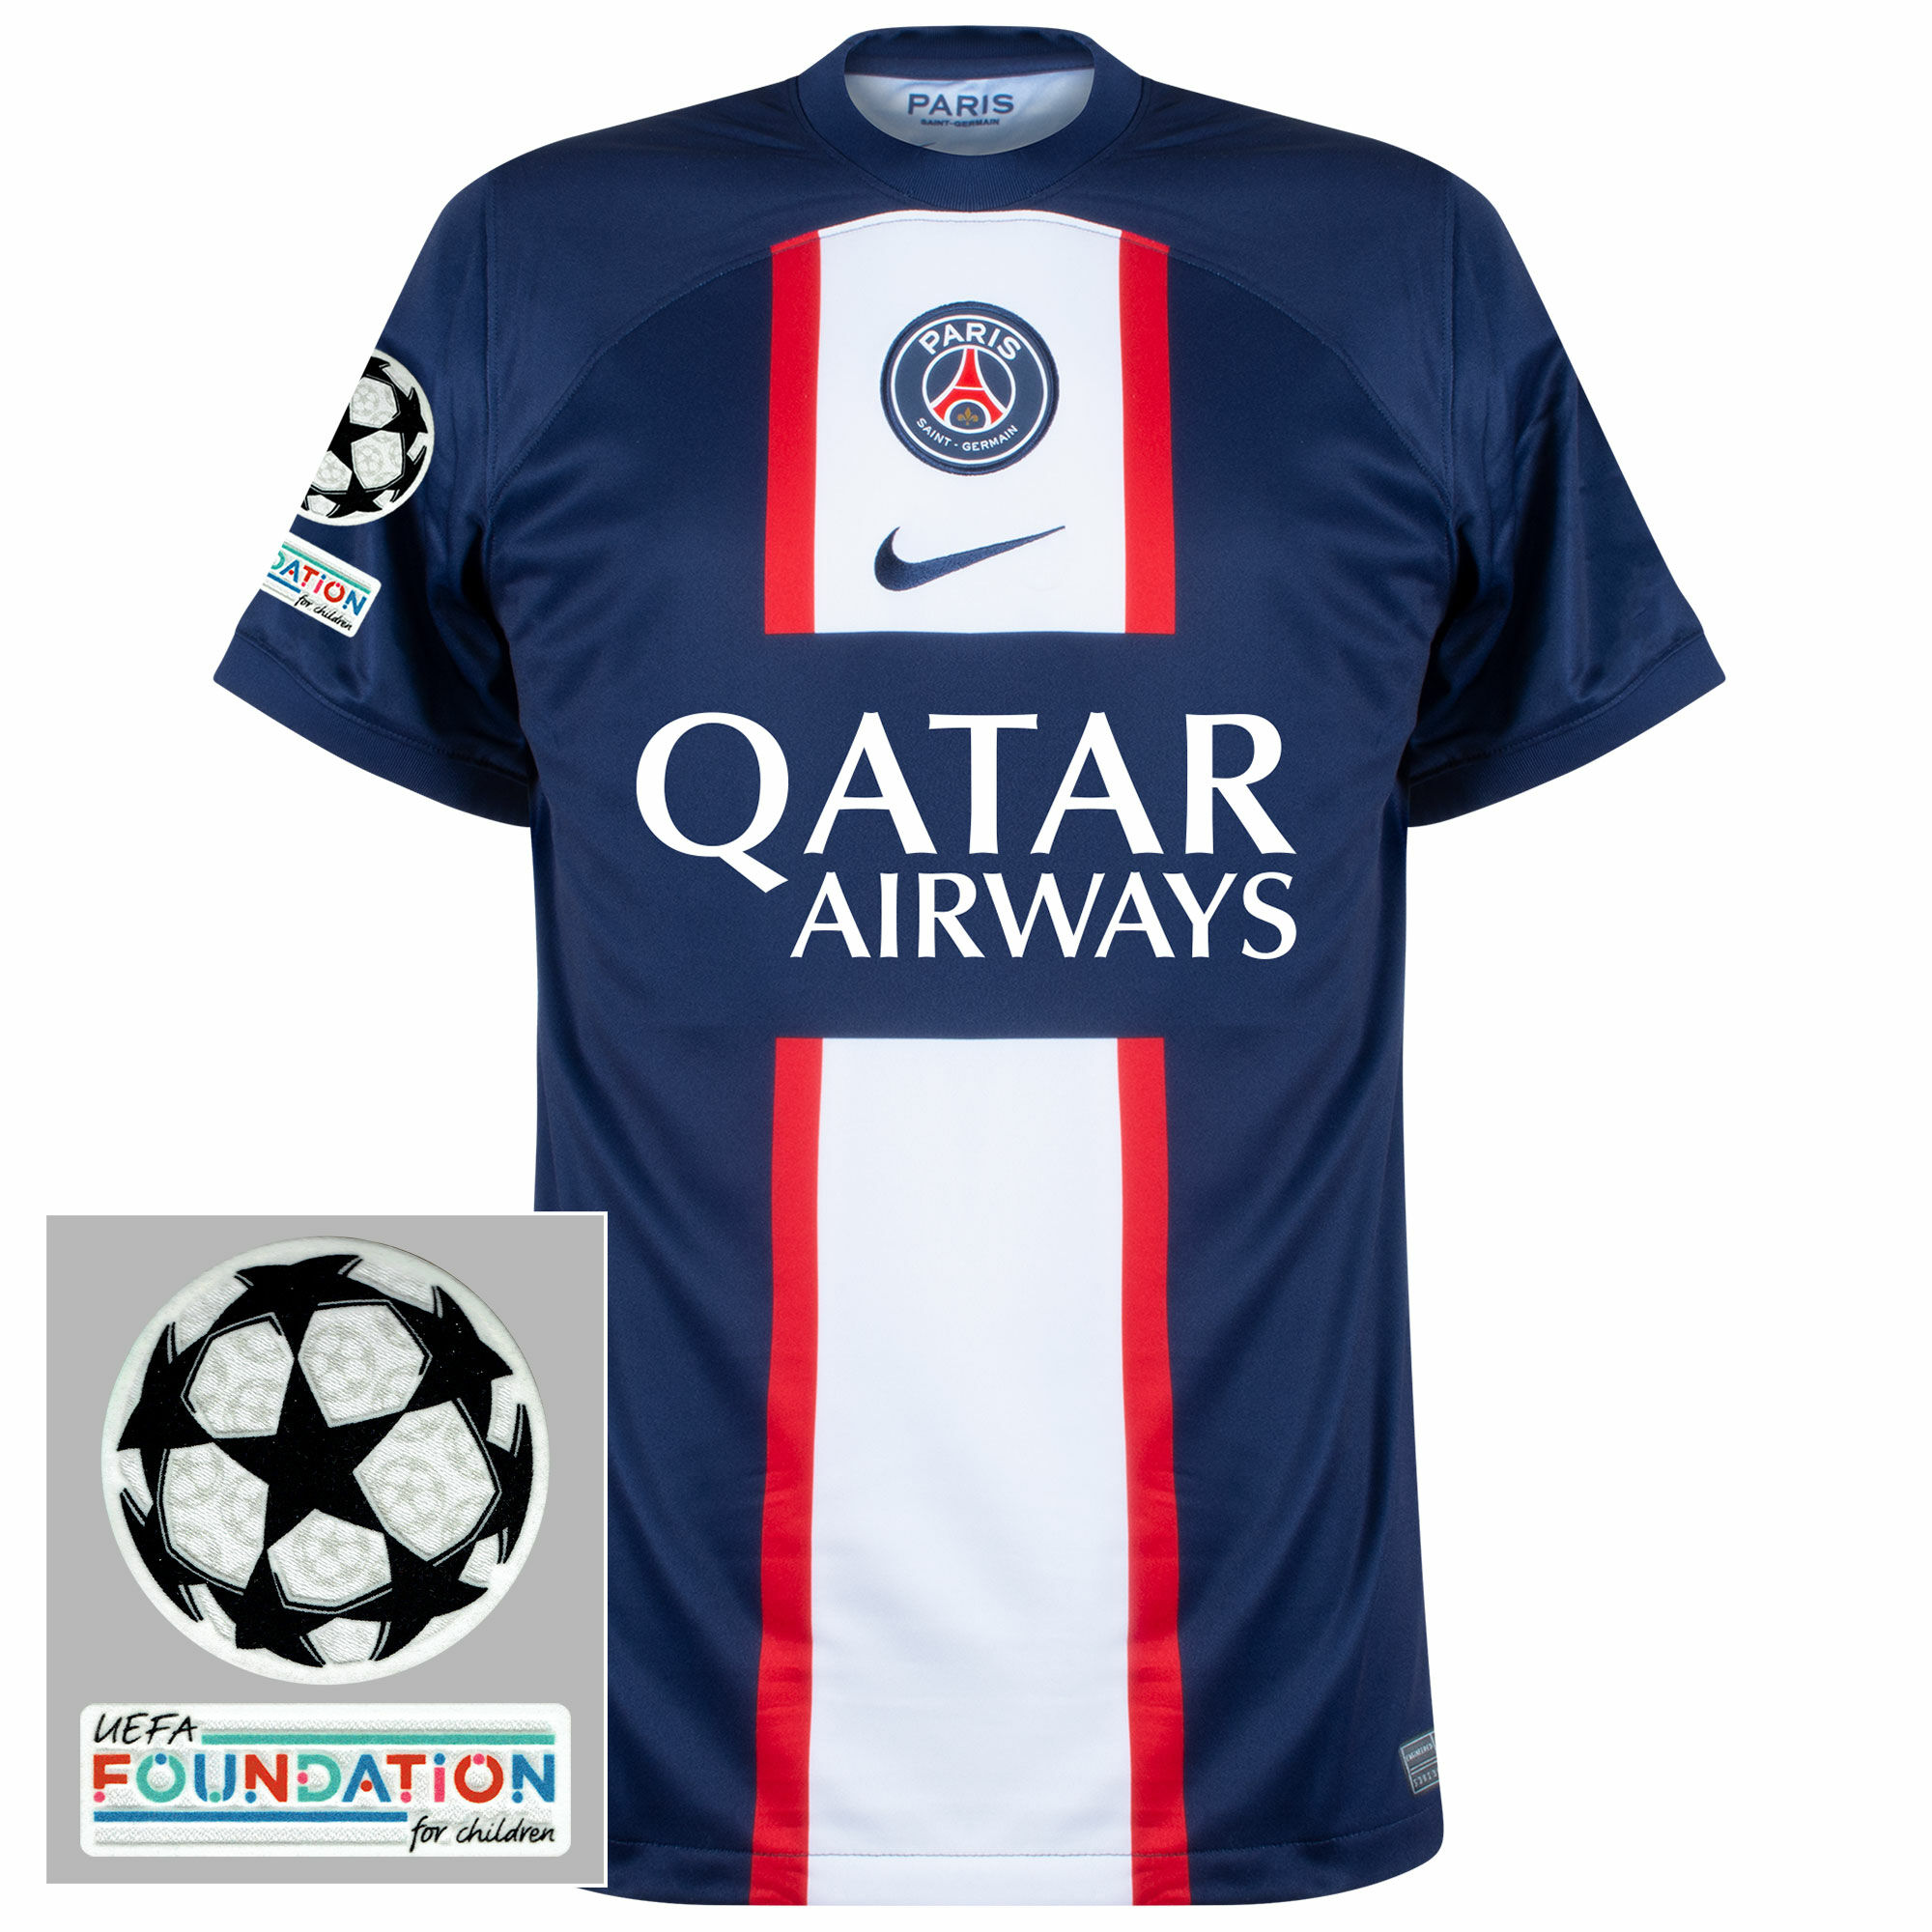 Paris Saint Germain - Dres fotbalový - Dri-FIT, loga UCL a UEFA Foundation, domácí, sezóna 2022/23, modrý